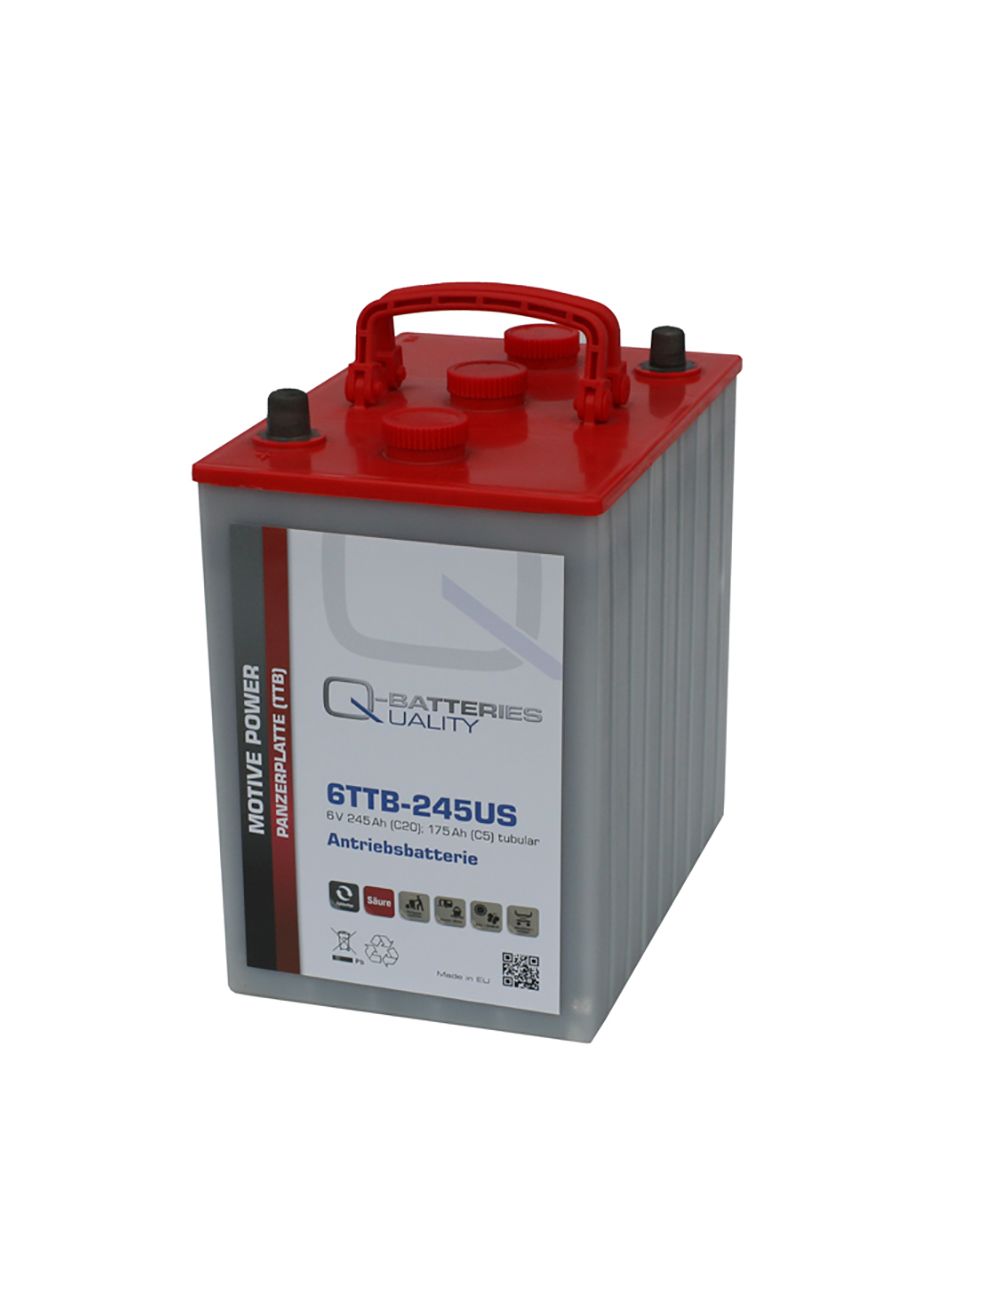 Bateria 6V 245Ah C20 de chumbo-ácido com placa tubular Q-Batteries série TTB - 1